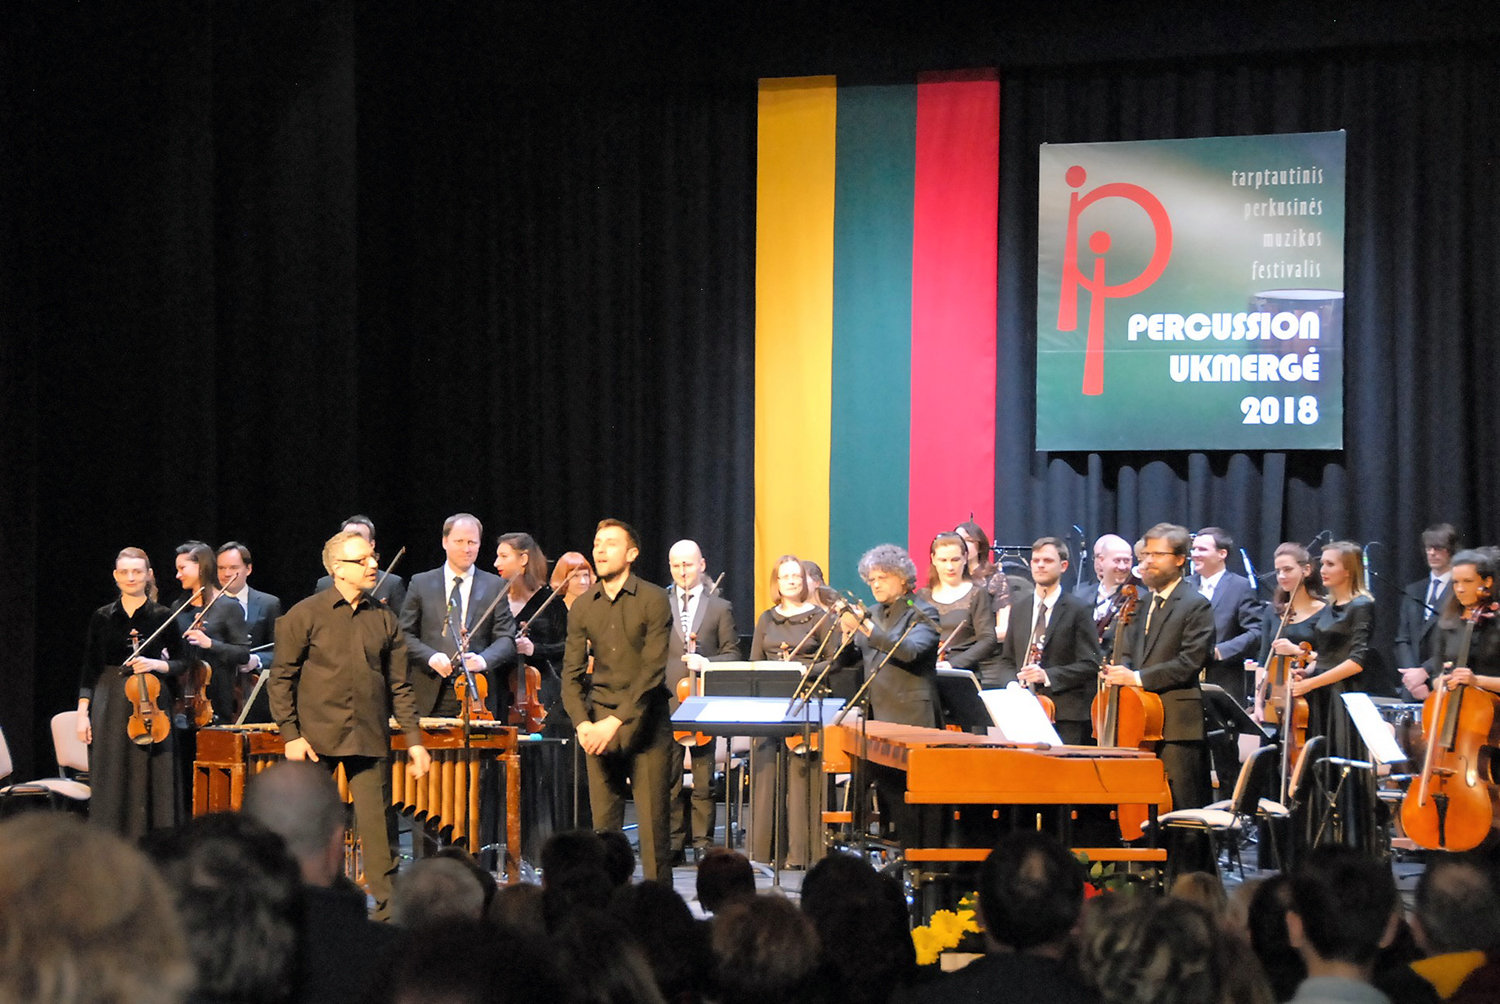 Lietuvos nepriklausomybės atkūrimo dienos minėjimas vyksta jau 14 kartą. Gedimino Nemunaičio nuotr.